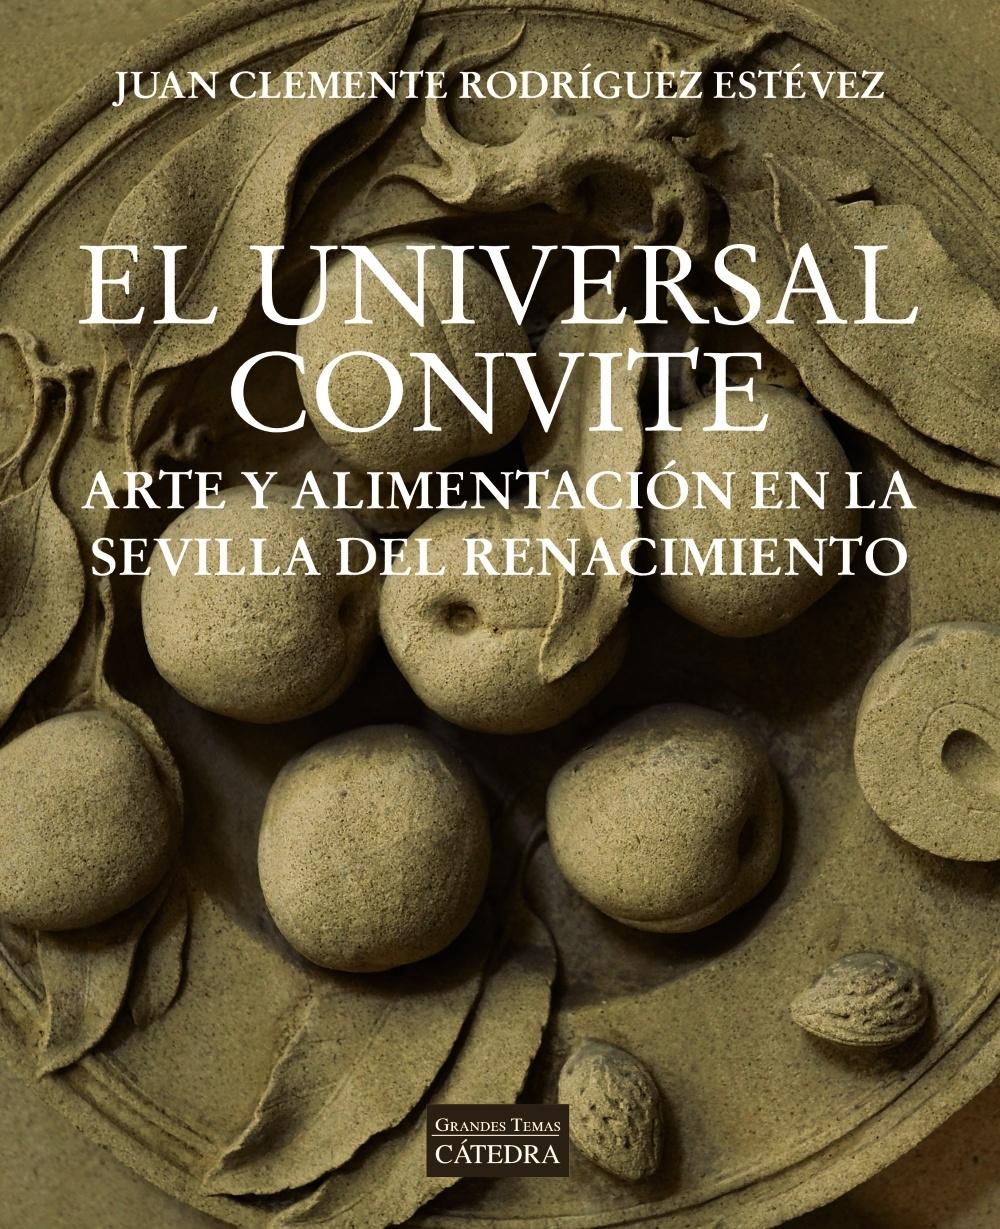 El universal convite "Arte y alimentación en la Sevilla del Renacimiento"